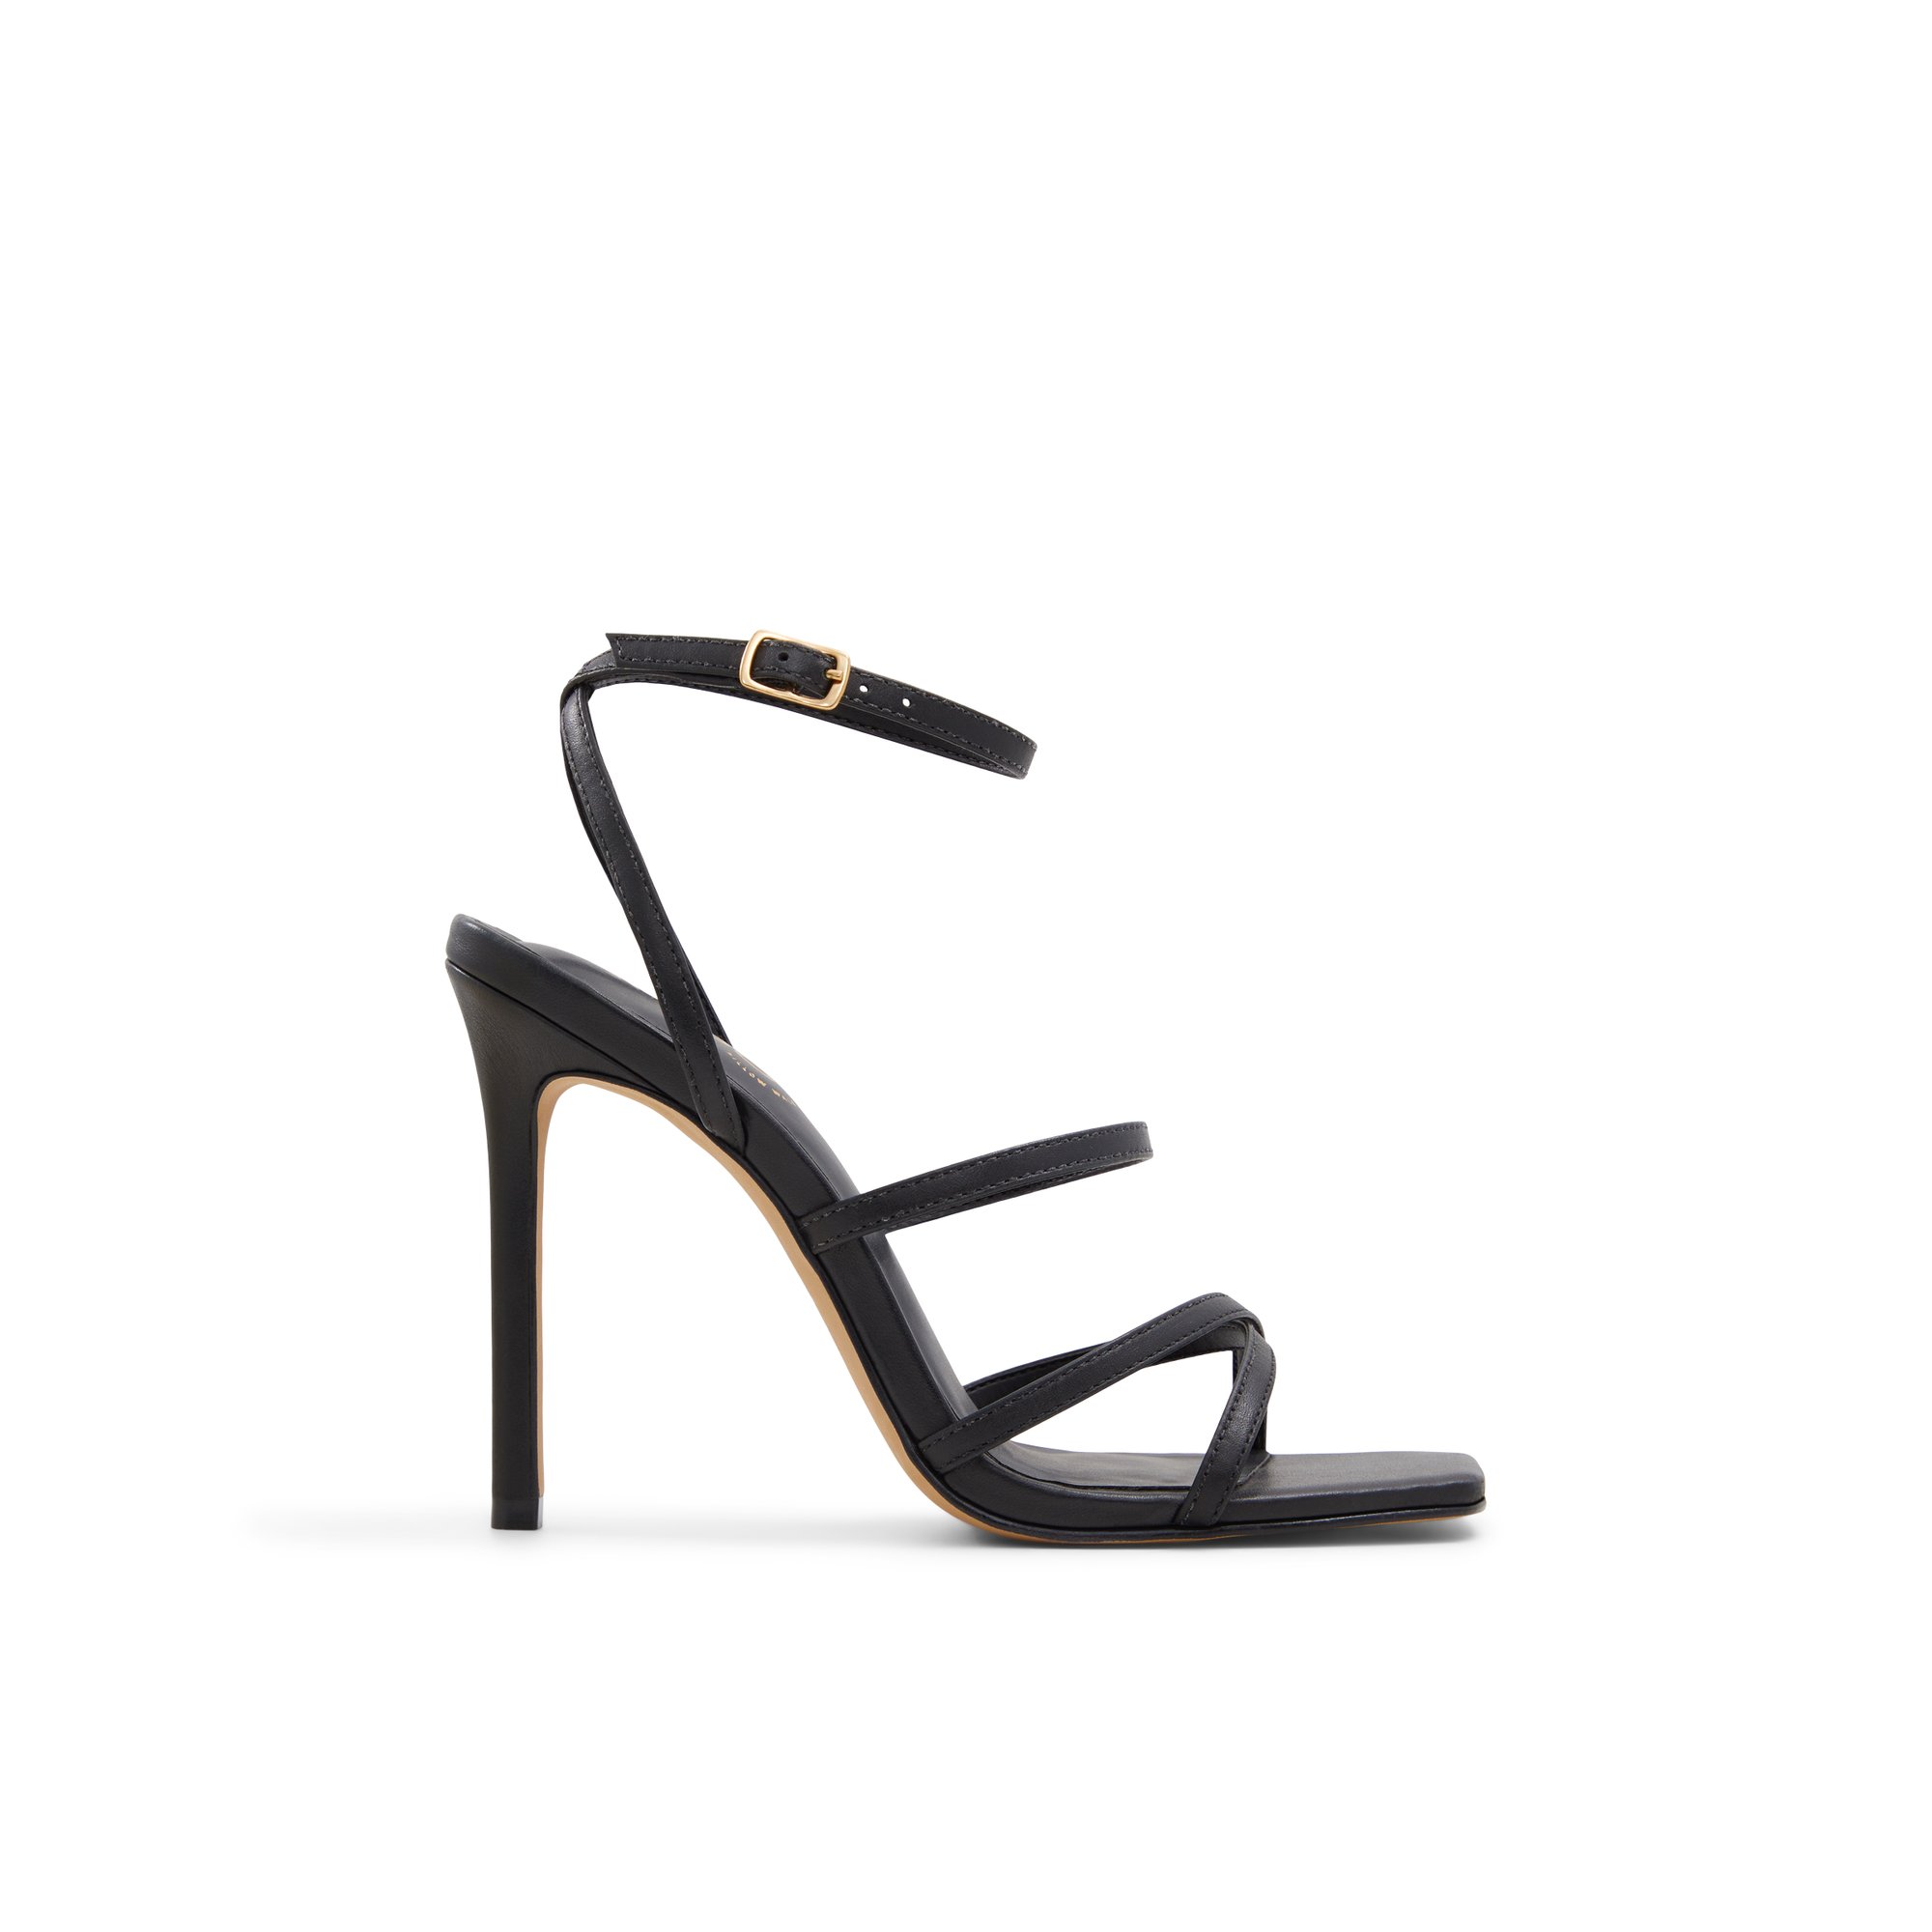 ALDO Galoi - Women's Sandals Strappy - Black